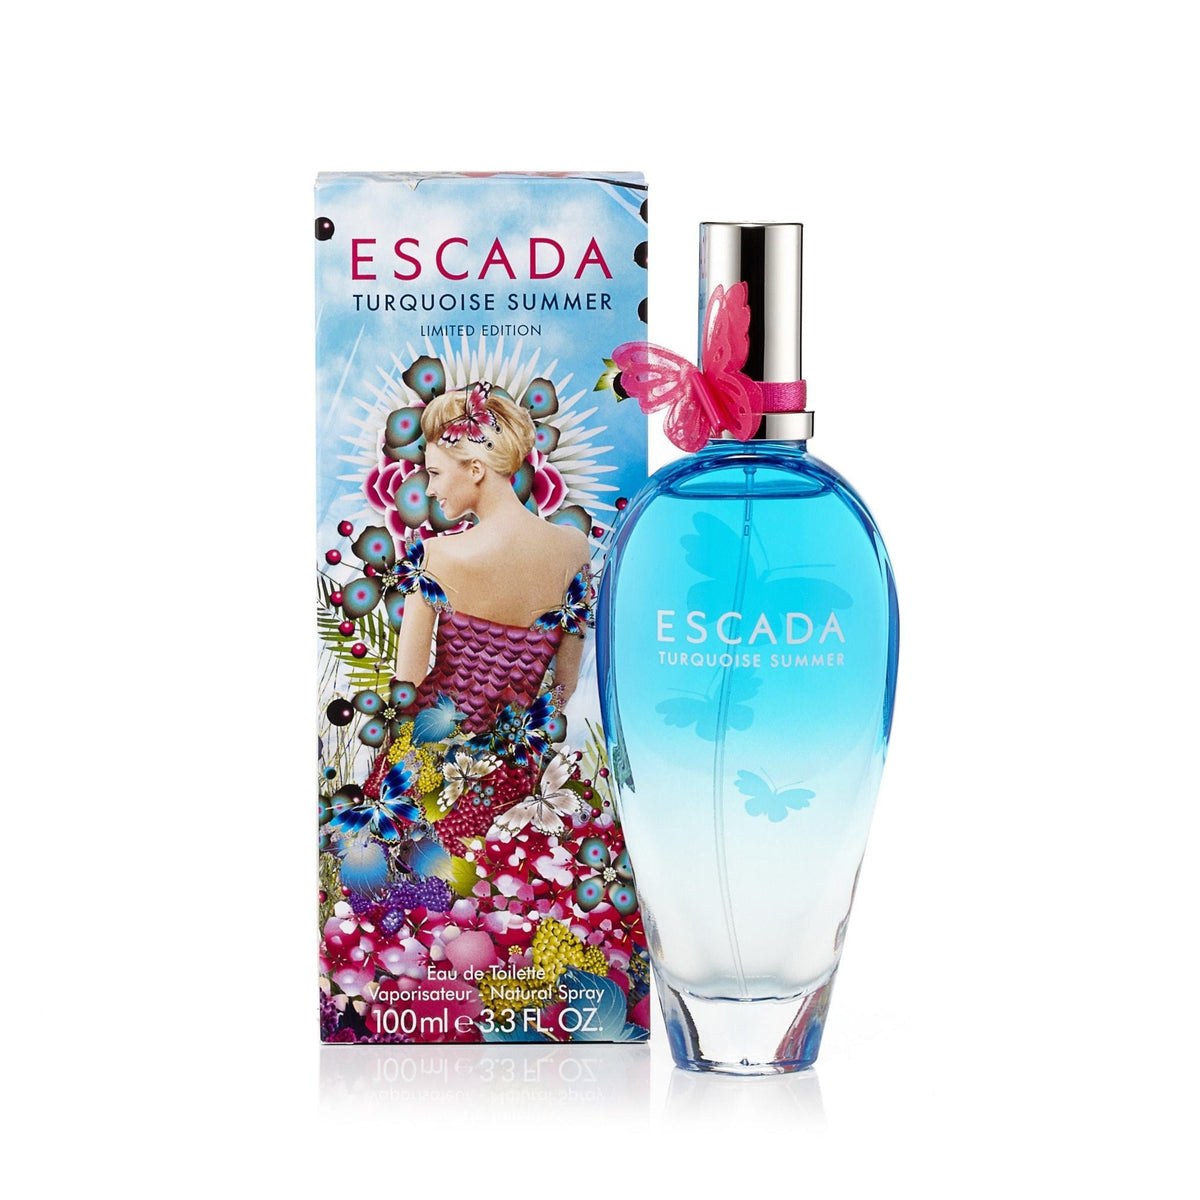 Turquoise Summer Eau de Toilette Spray for Women by Escada